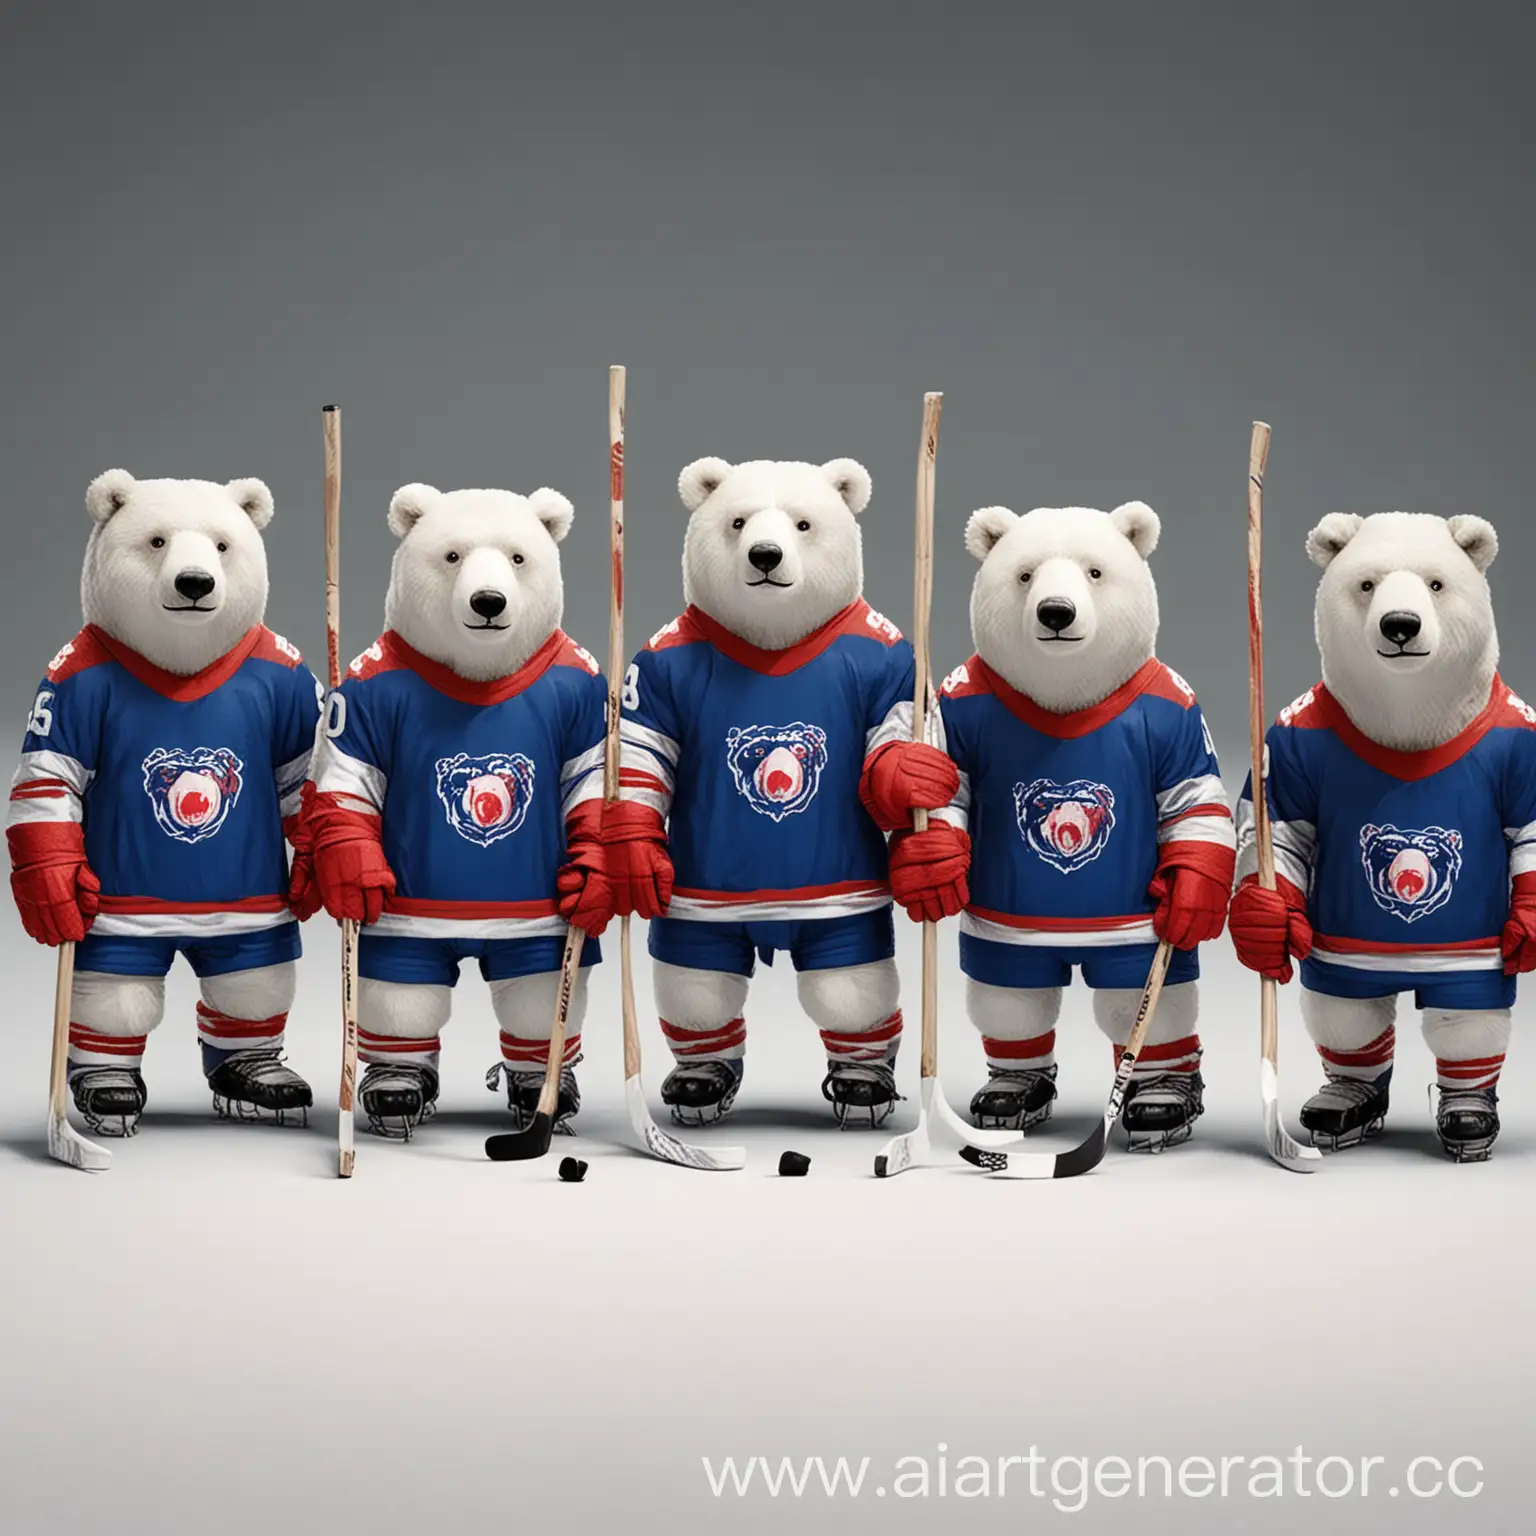 десять белых медведей в минималистичном стиле в бело-сине-красной хоккейной форме с клюшками грозно смотрят